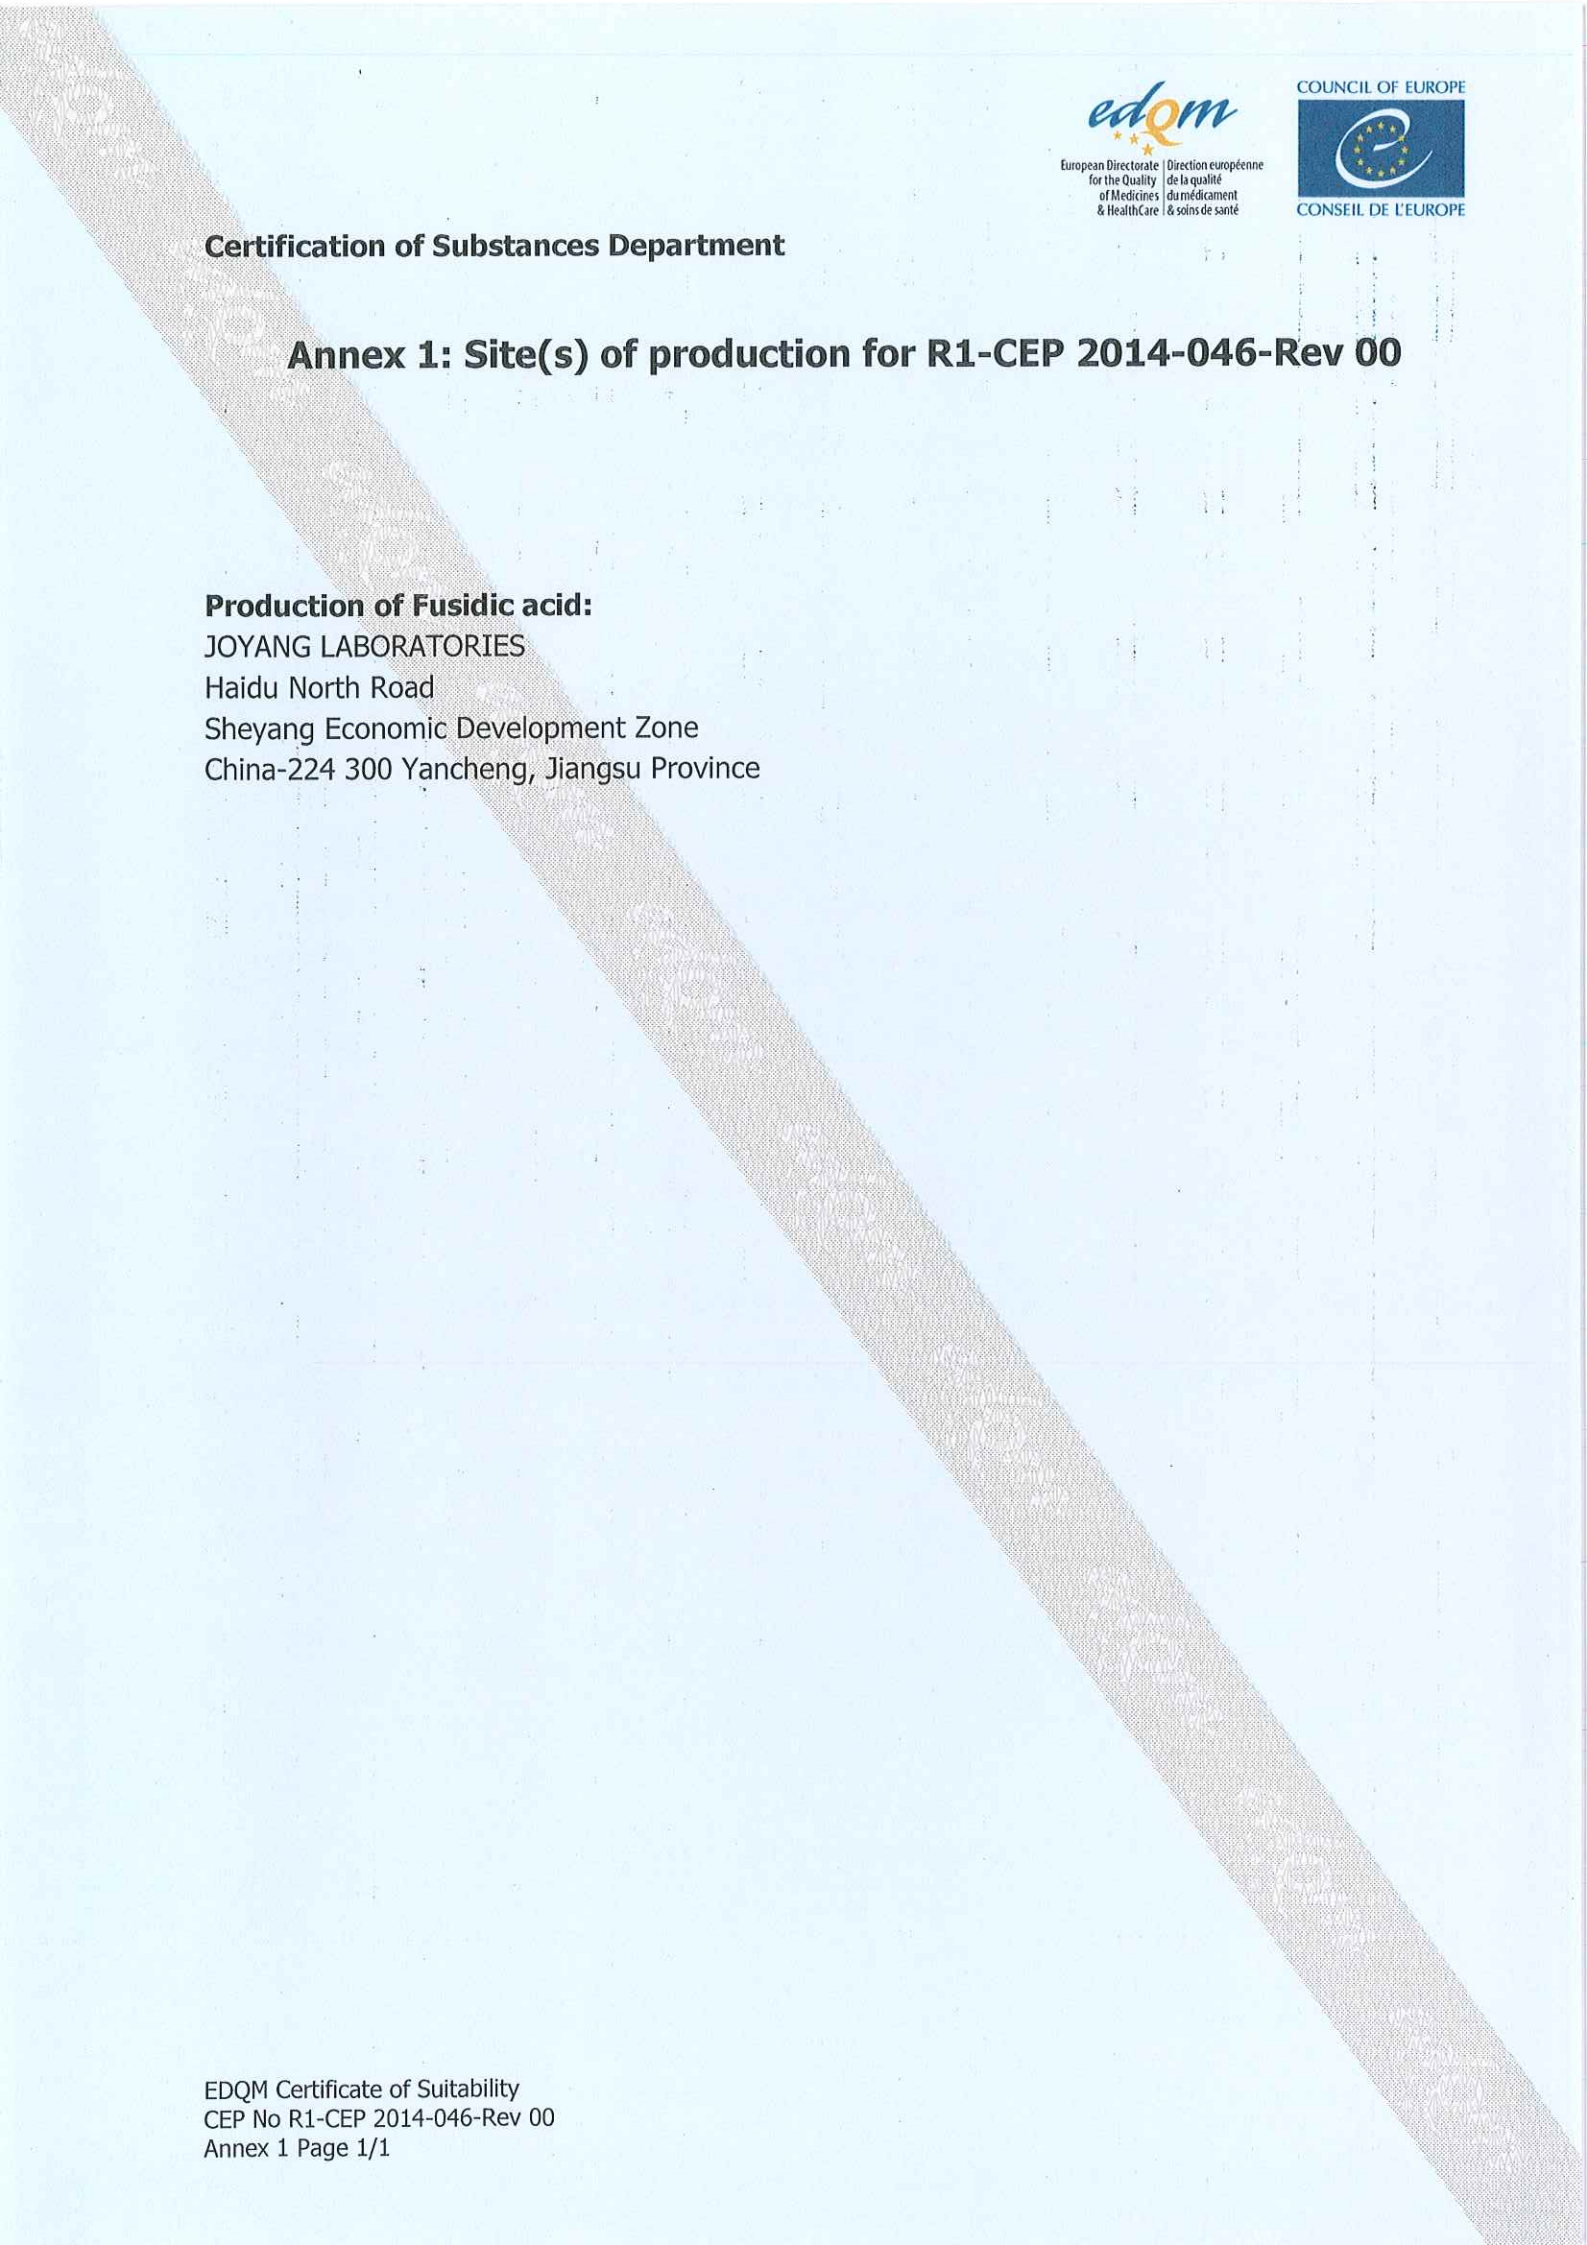 夫西地酸CEP证书20200625永久性_02